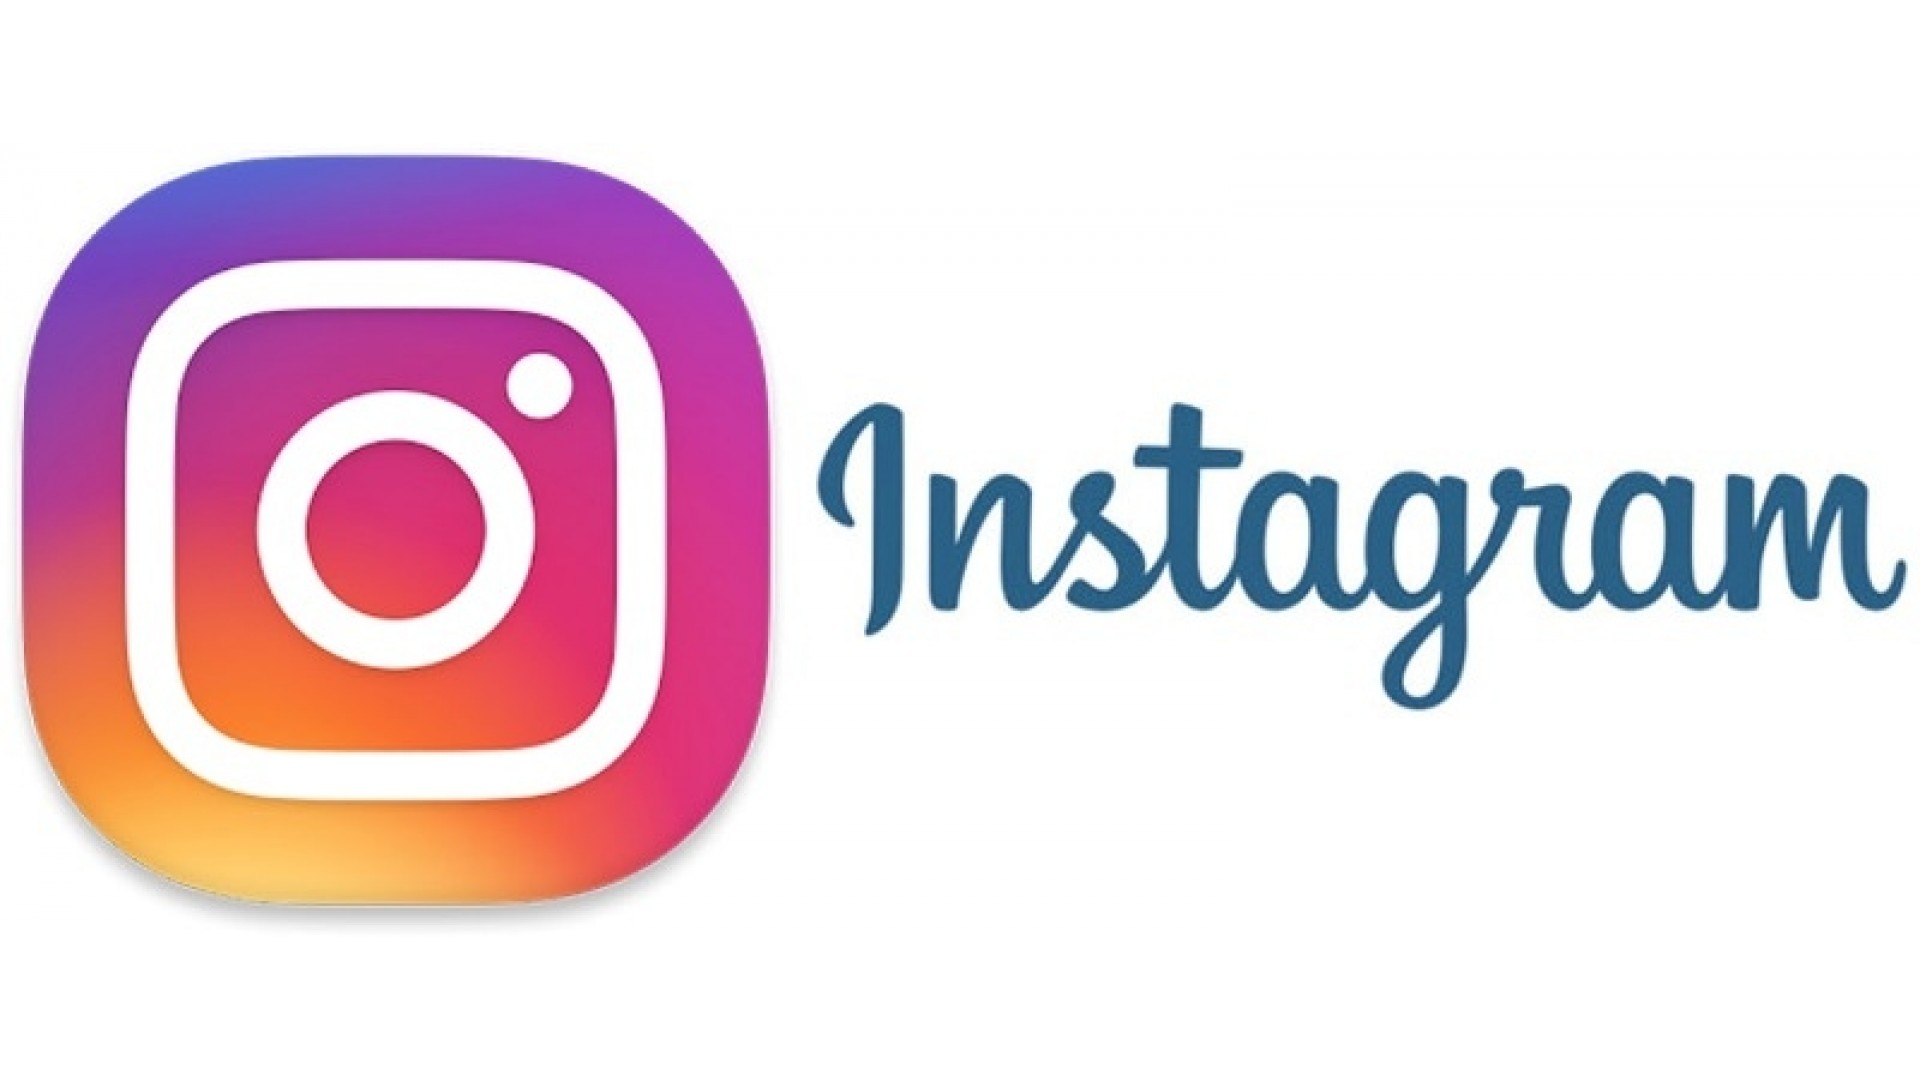 КГ «Центральный пост» теперь в Instagram 